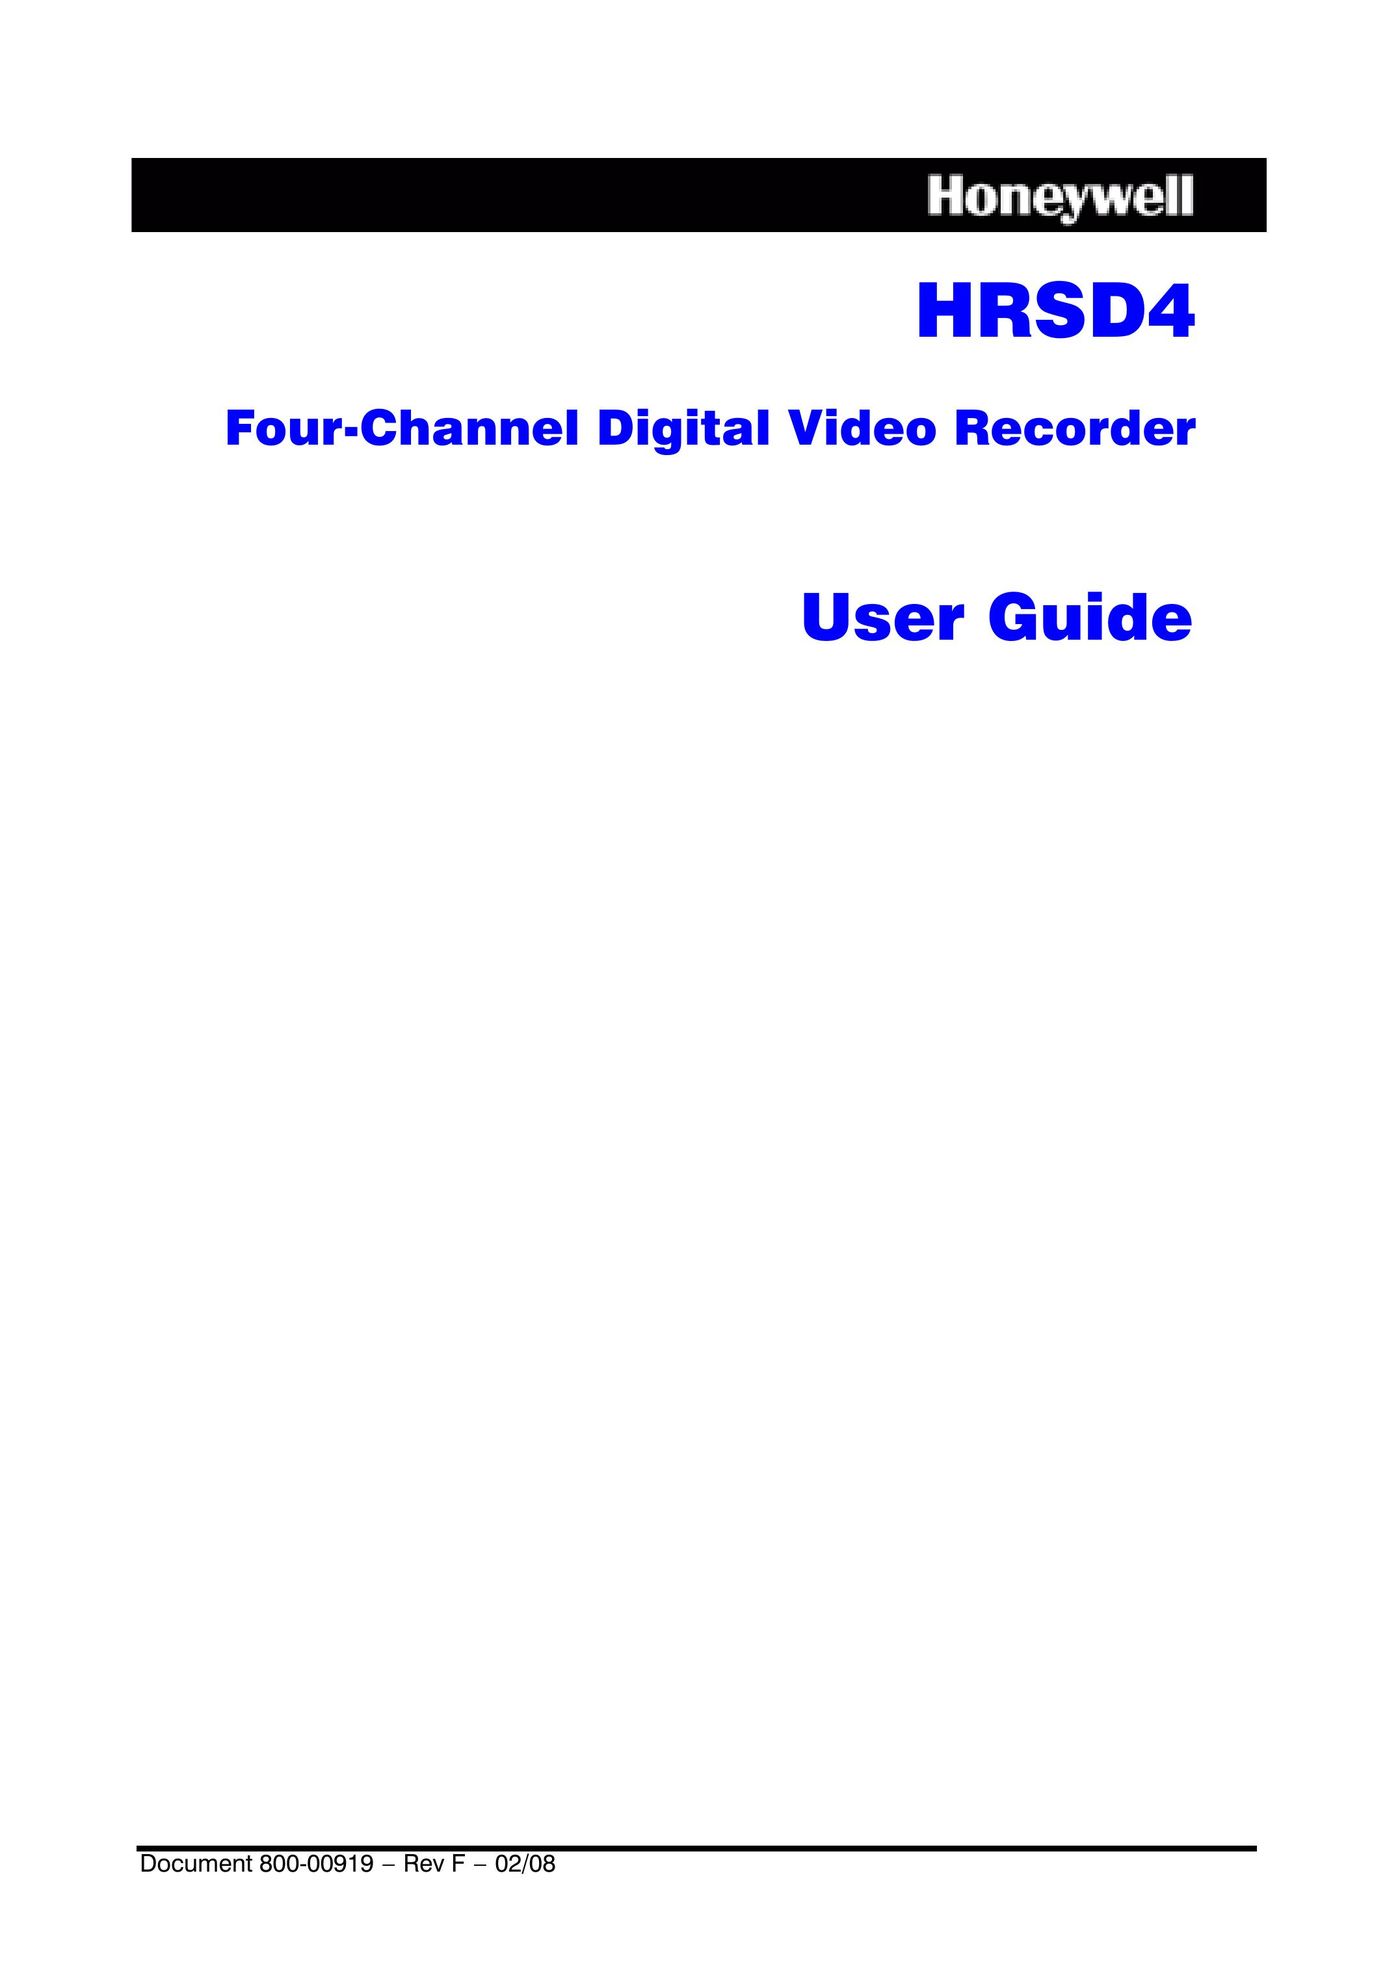 Honeywell HRSD4 DVR User Manual